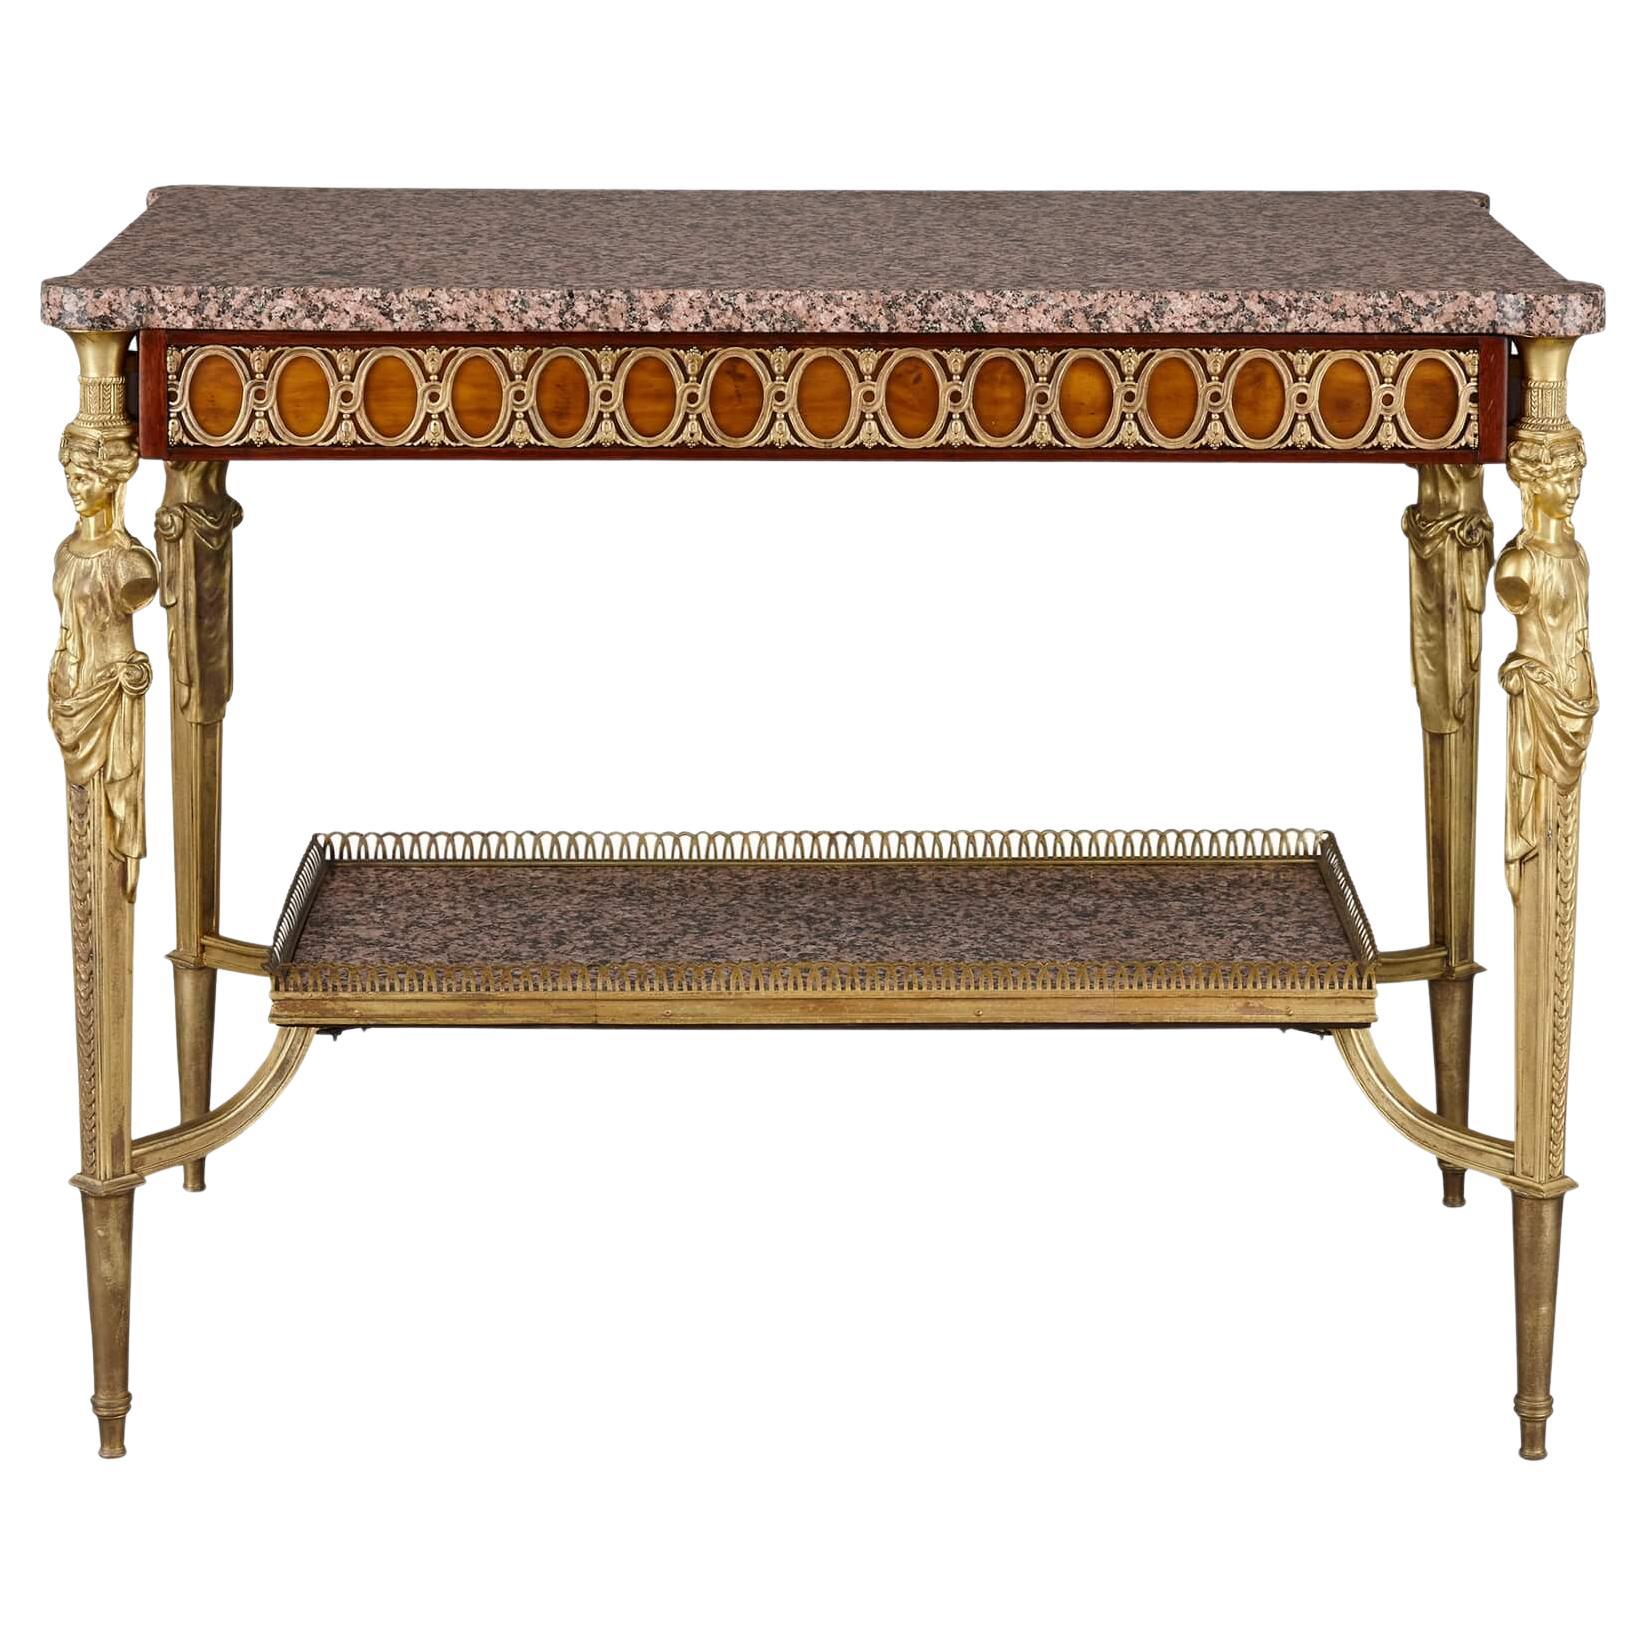 Table centrale de style Louis XVI en marbre, acajou et bronze doré